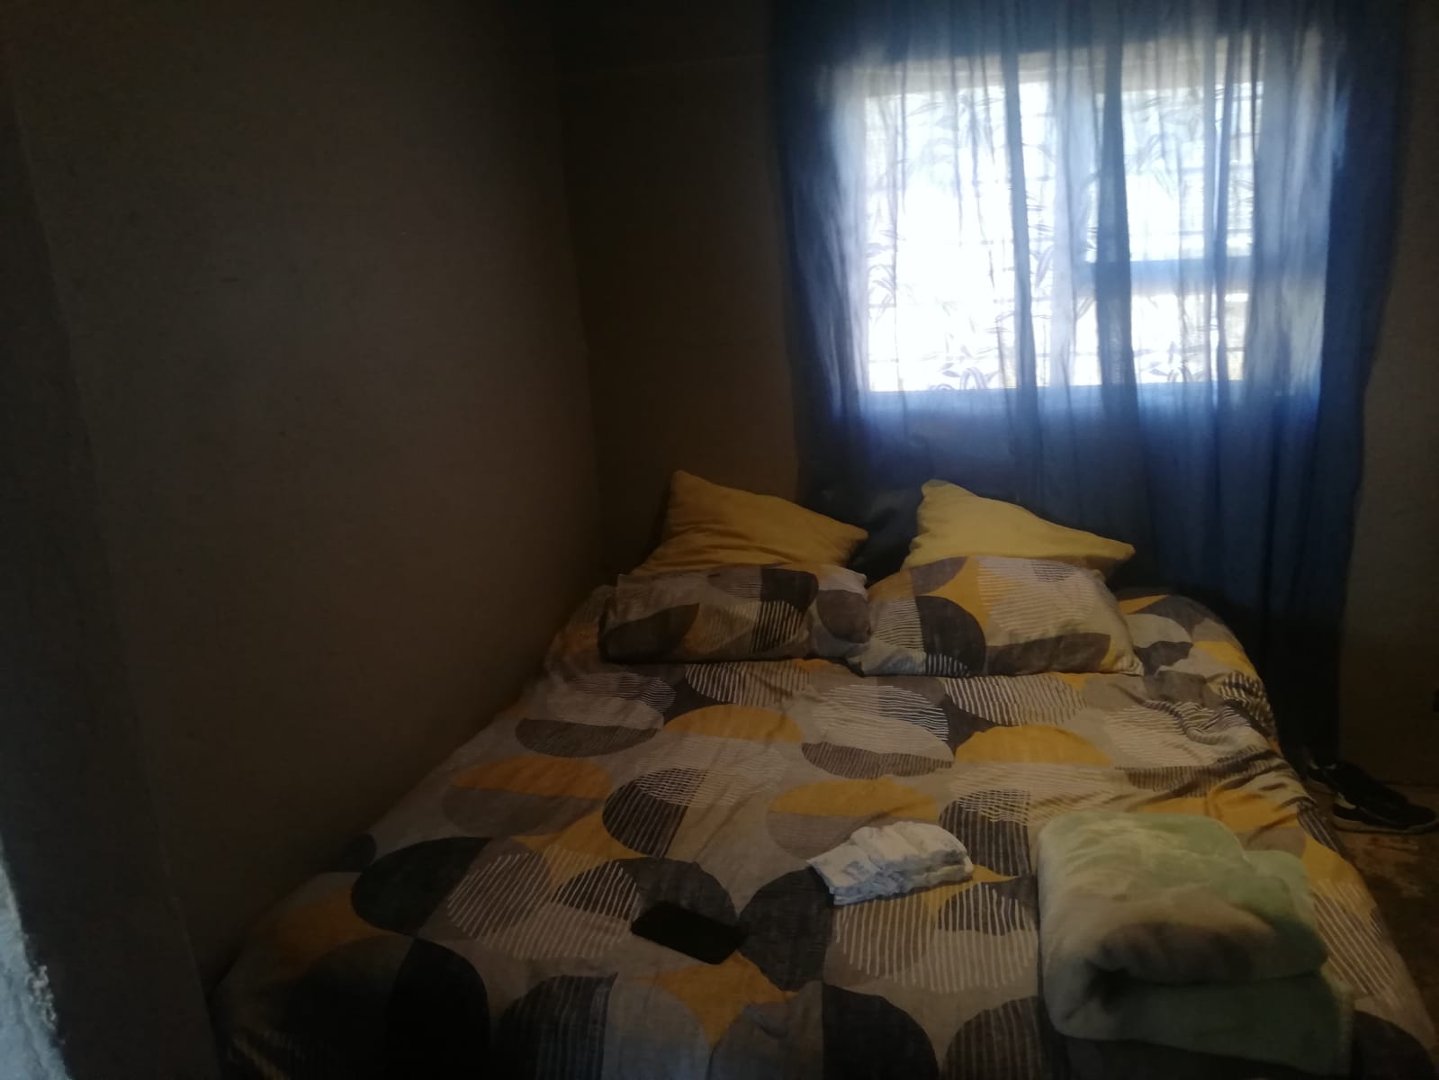 3 Bedroom Property for Sale in Tafelsig Western Cape